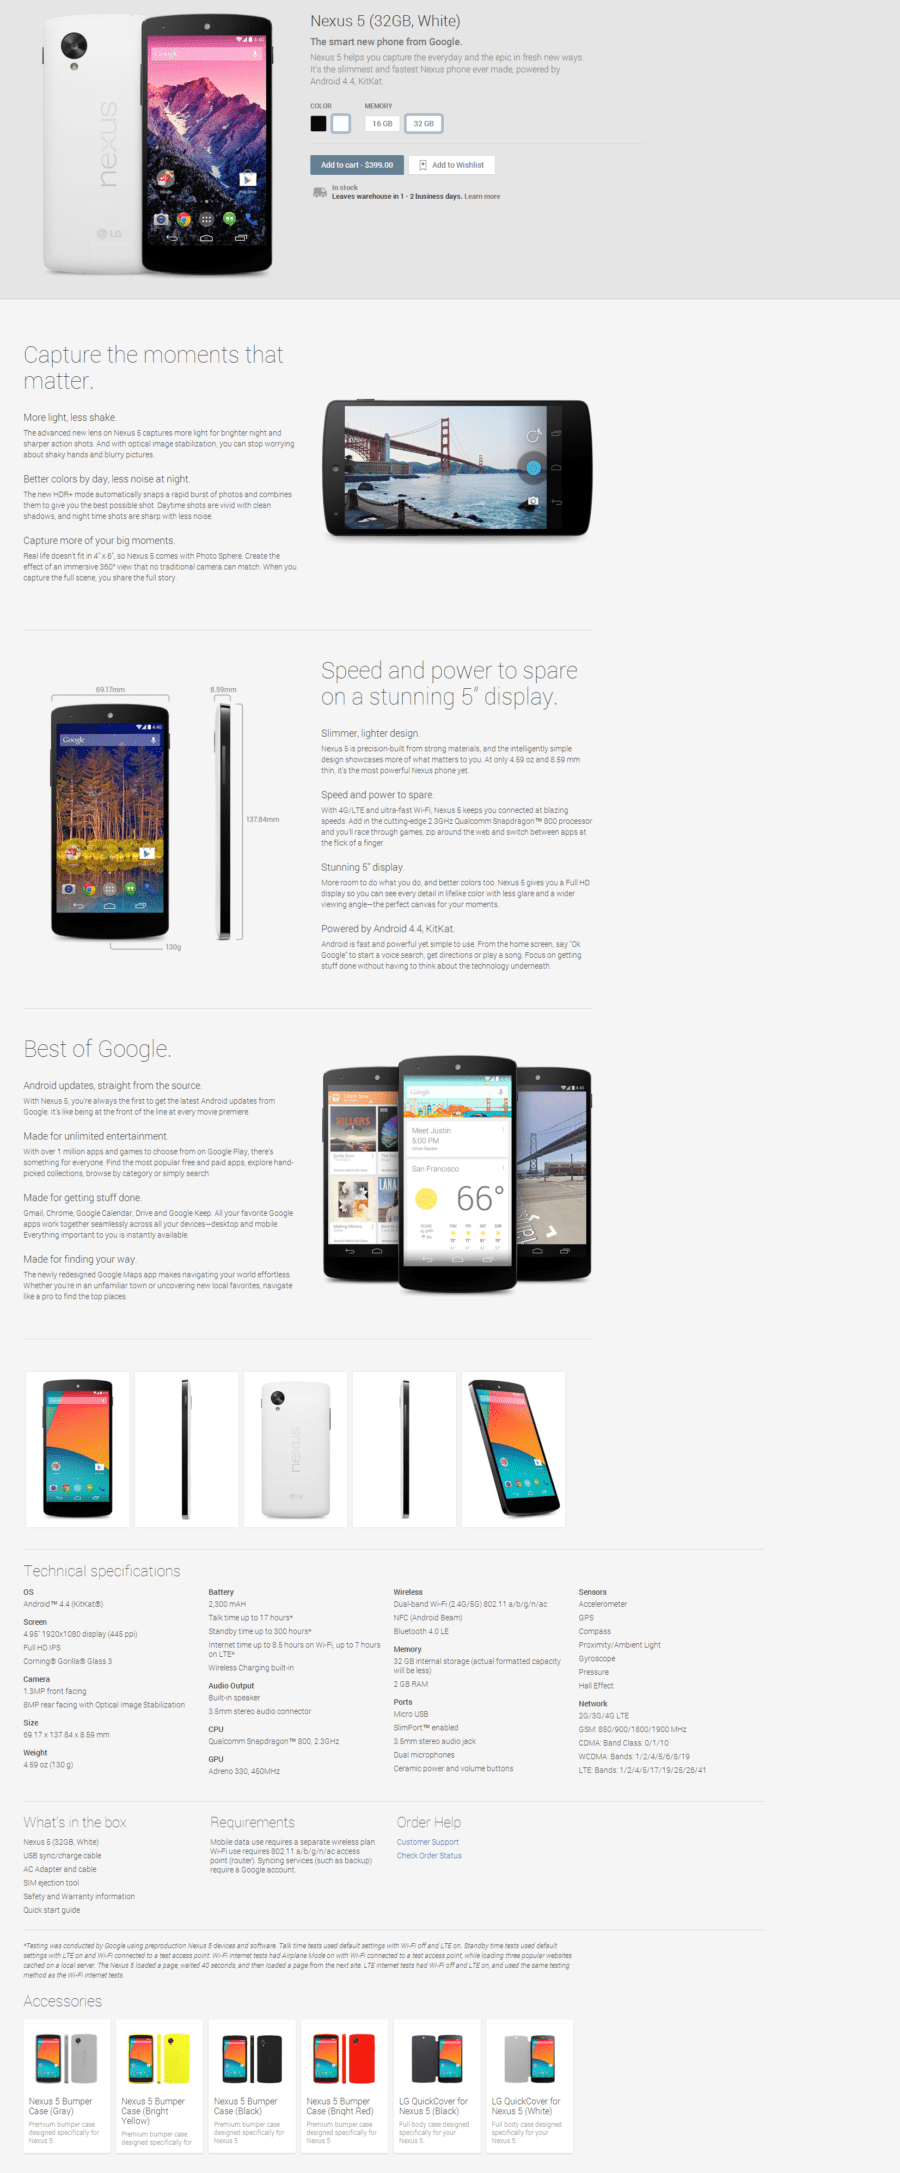 Nexus 5 32GB White Devices on Google Play